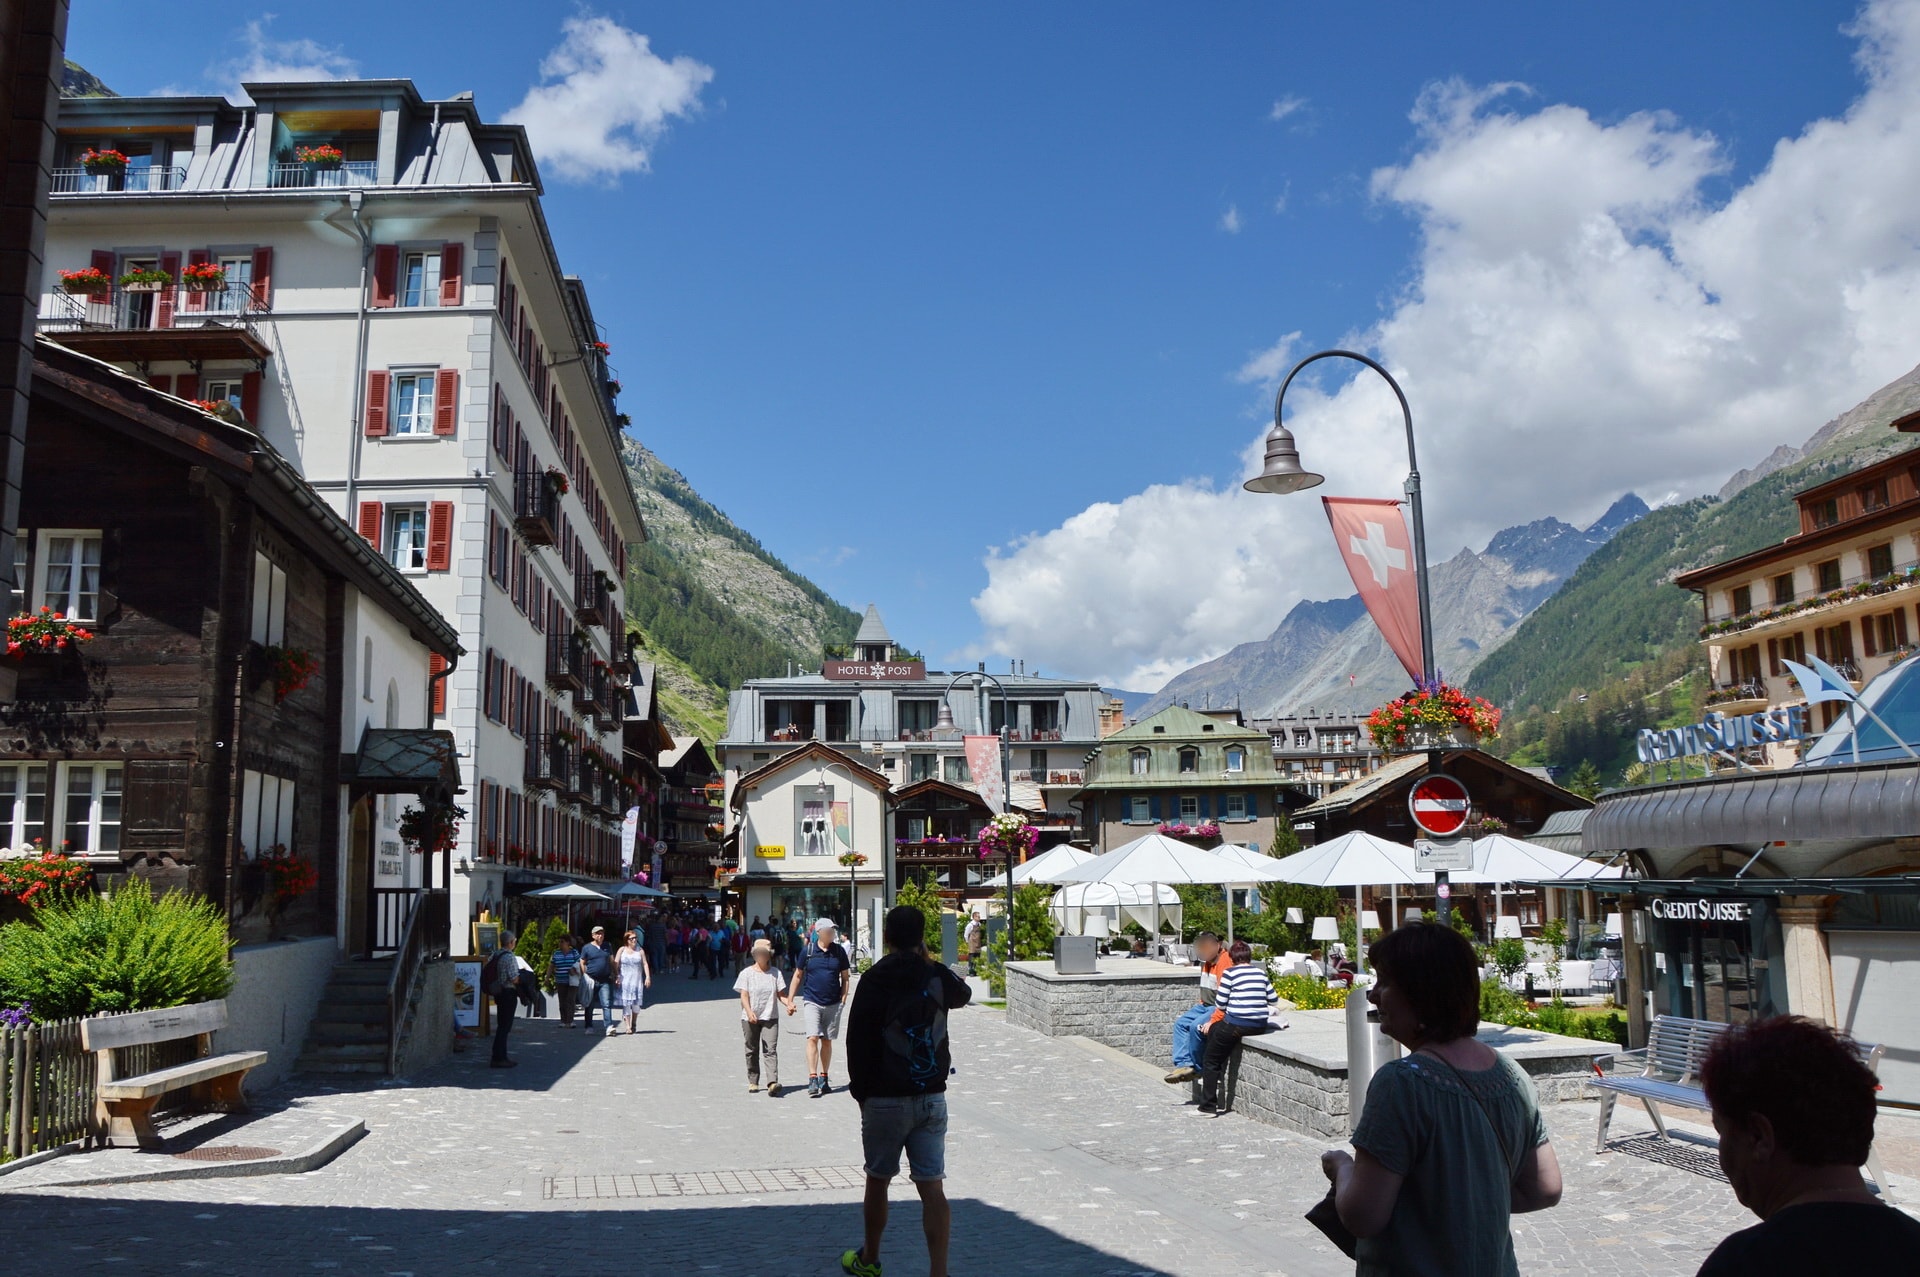 Bahnhofstrasse is the main street in Zermatt